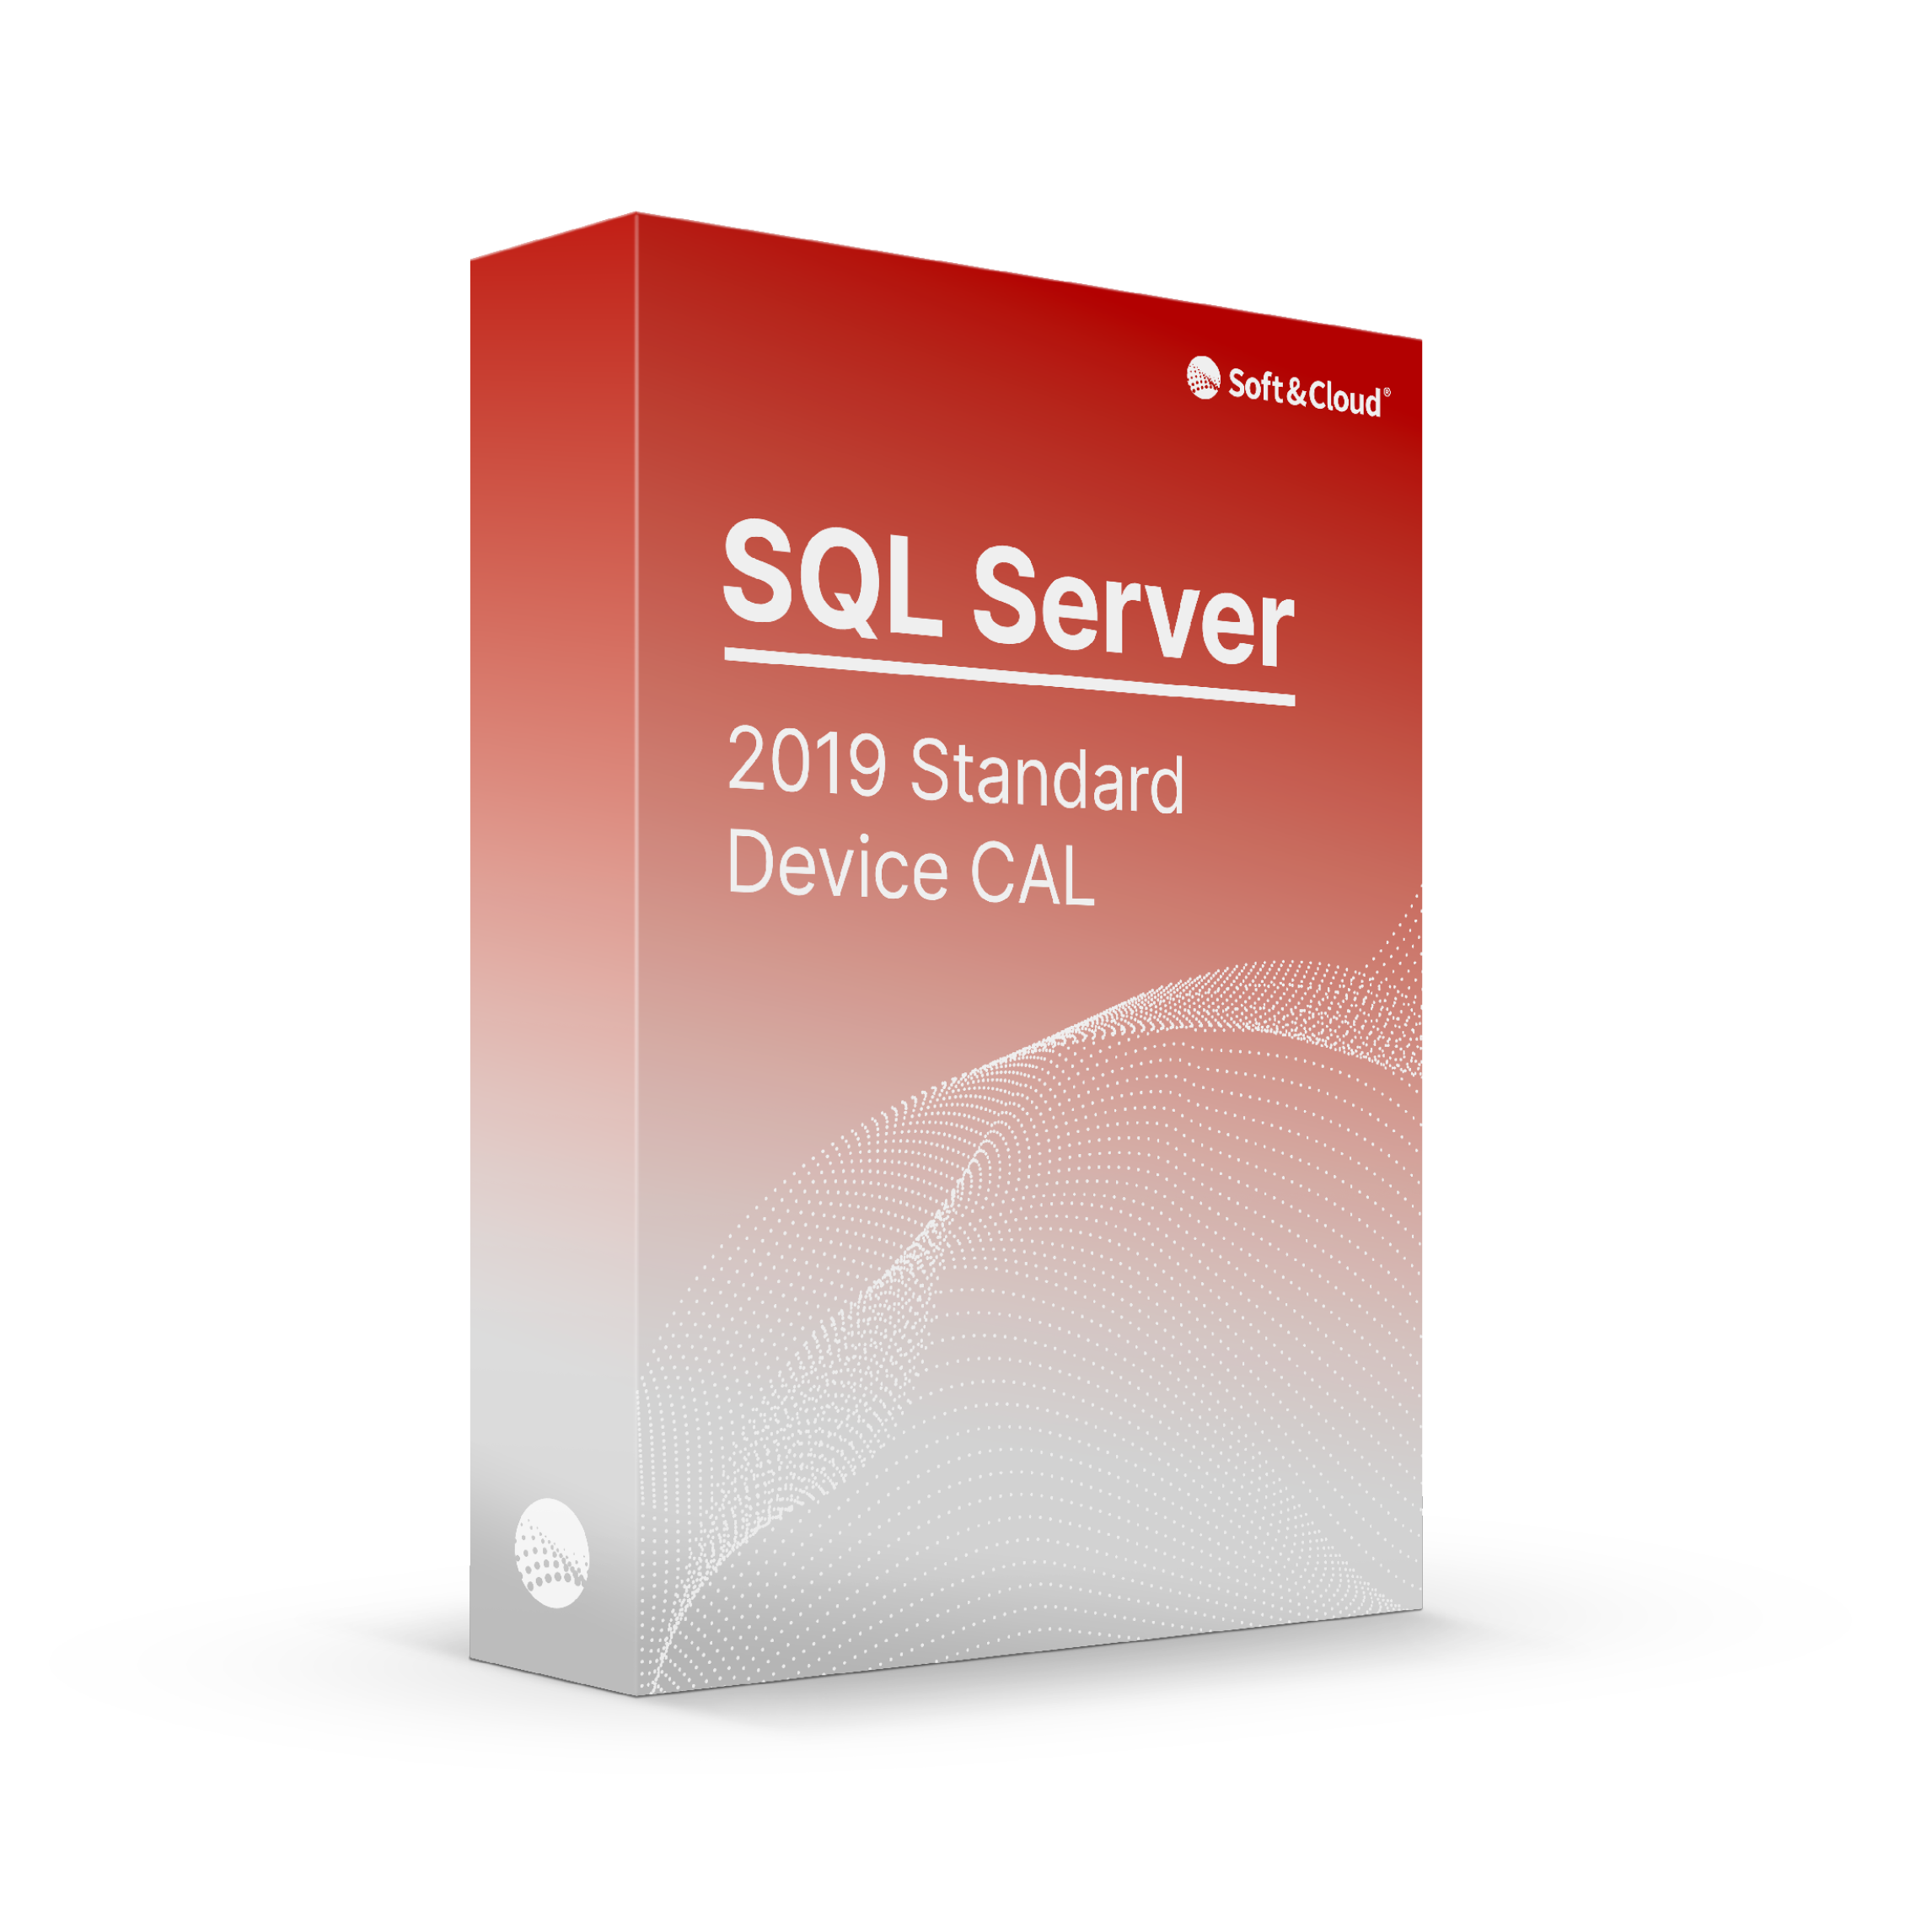 SQL Server 2019 Standard Device CAL